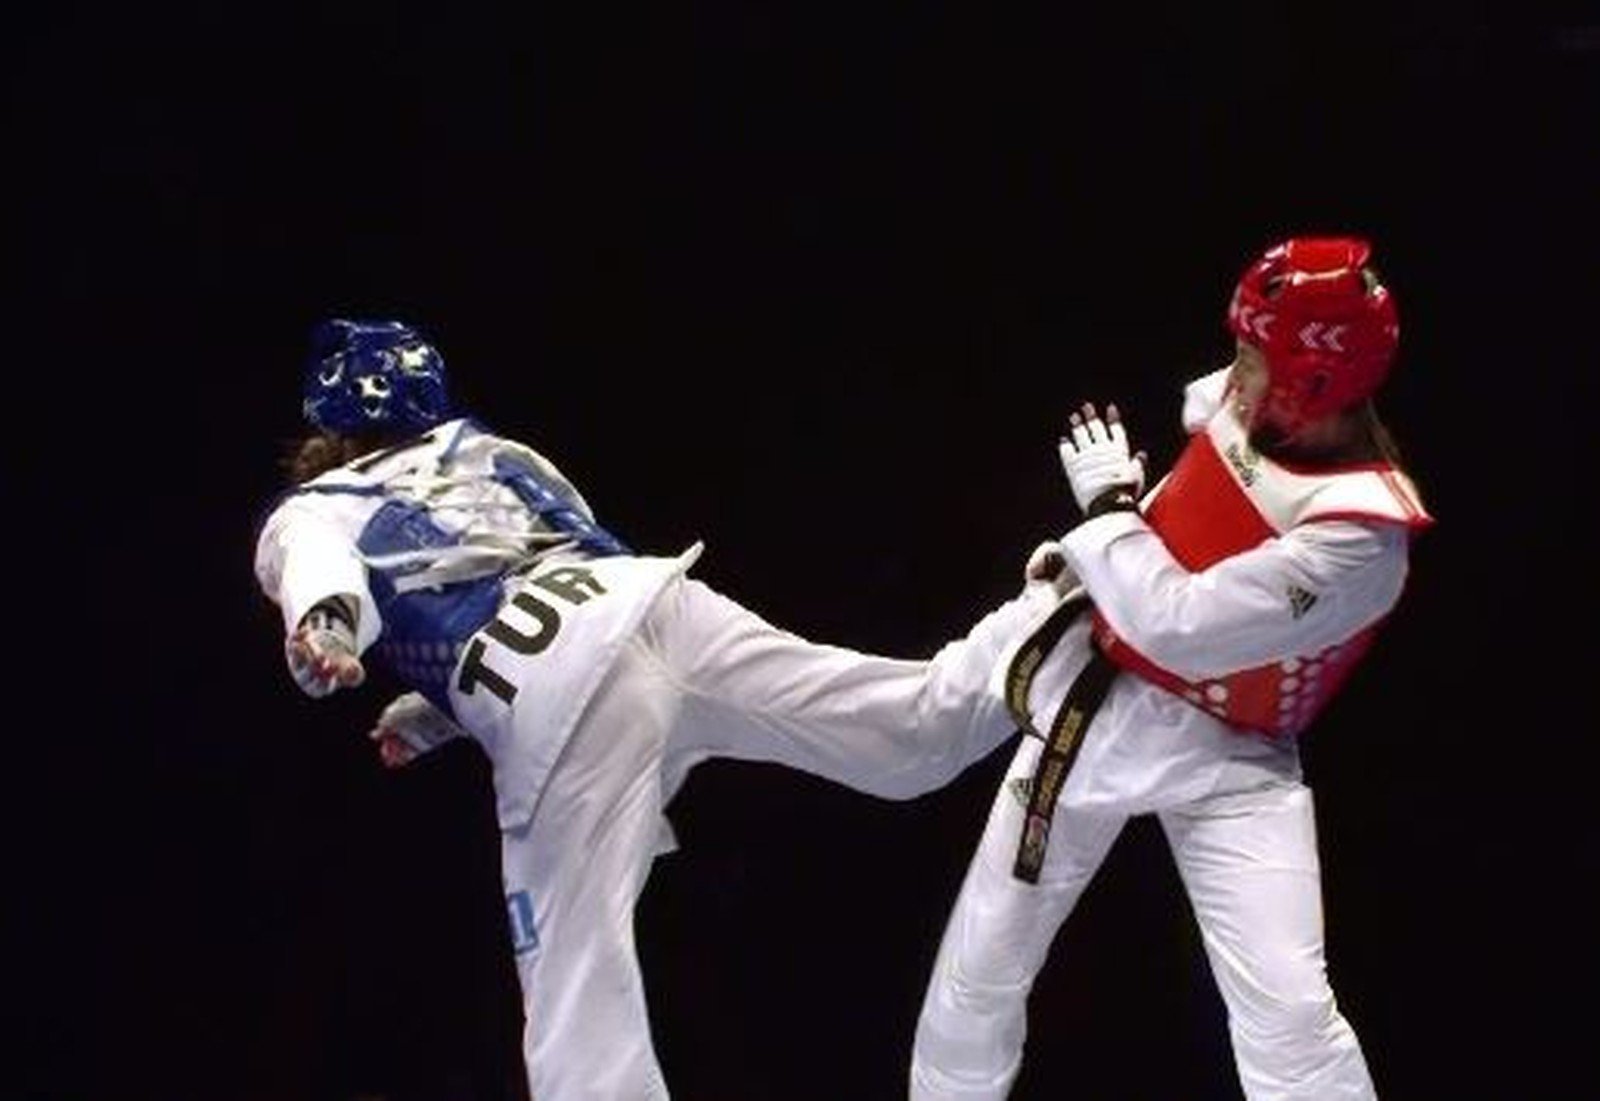 Programação do taekwondo nas Olimpíadas Paris 2024